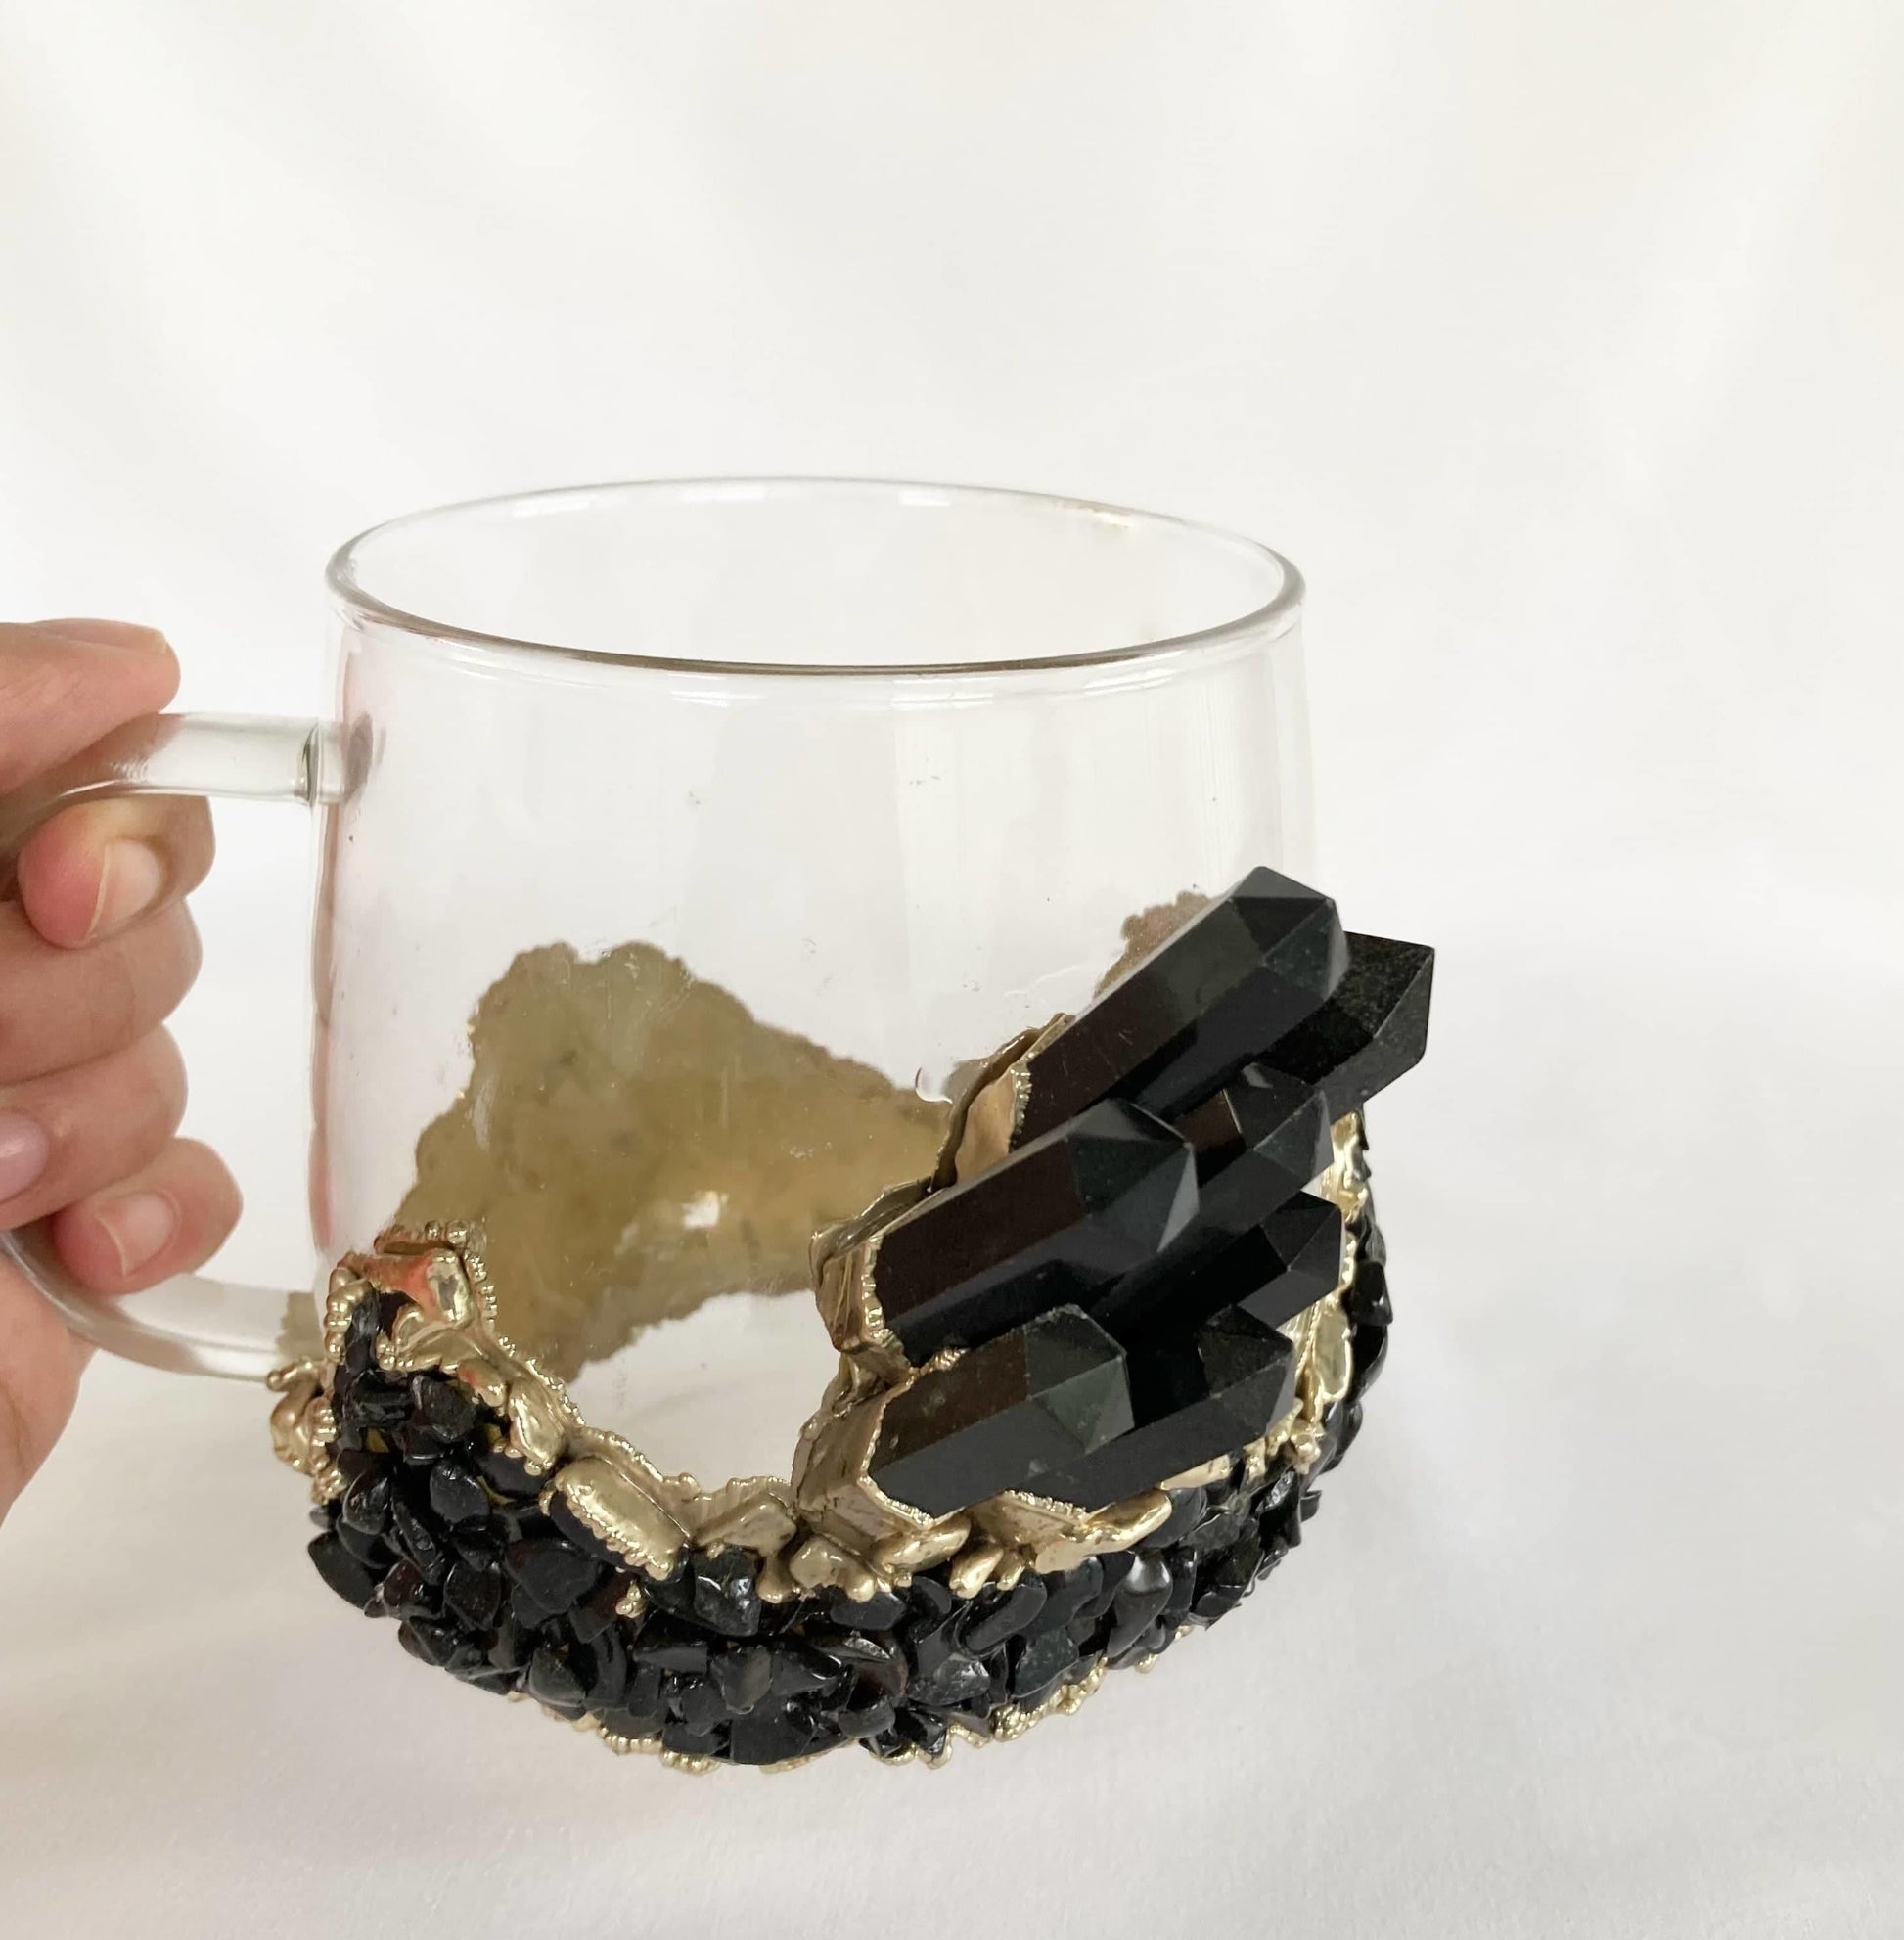 Black Quartz Glass Coffee Mug with Handle - Set of 2 - MAIA HOMES